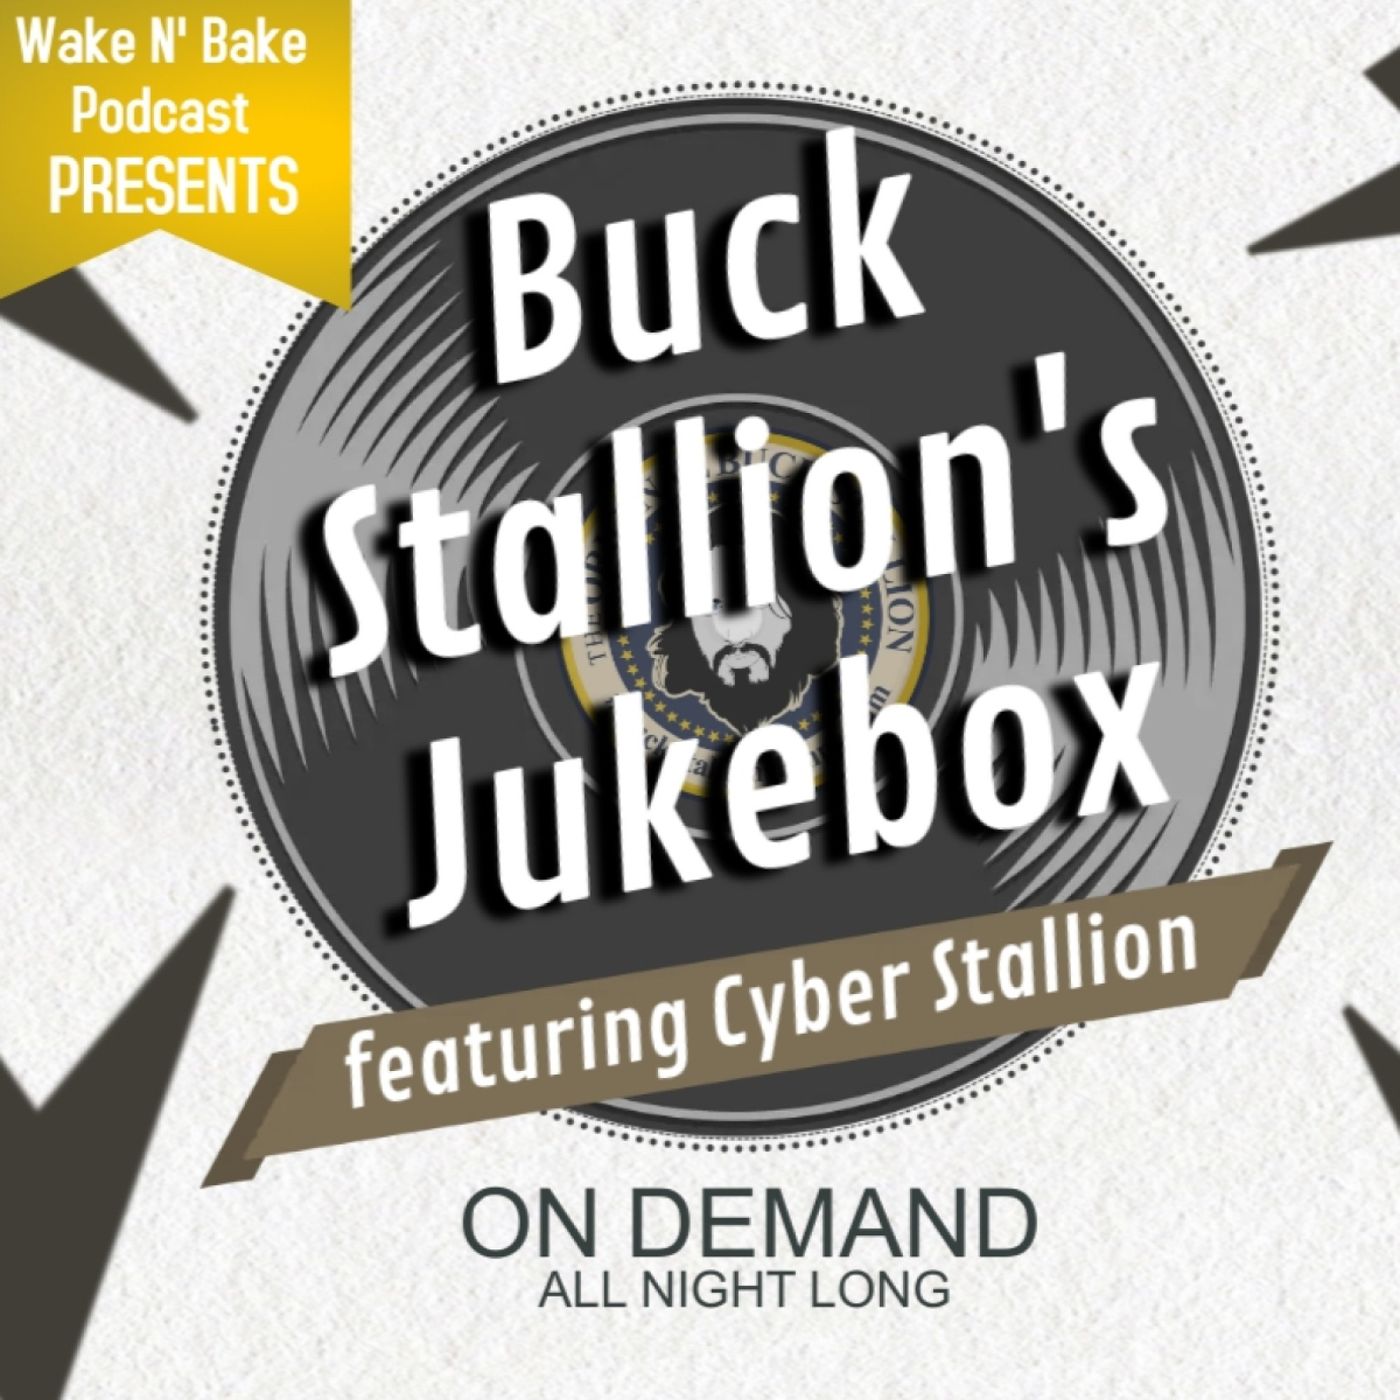 Buck Stallion's Jukebox